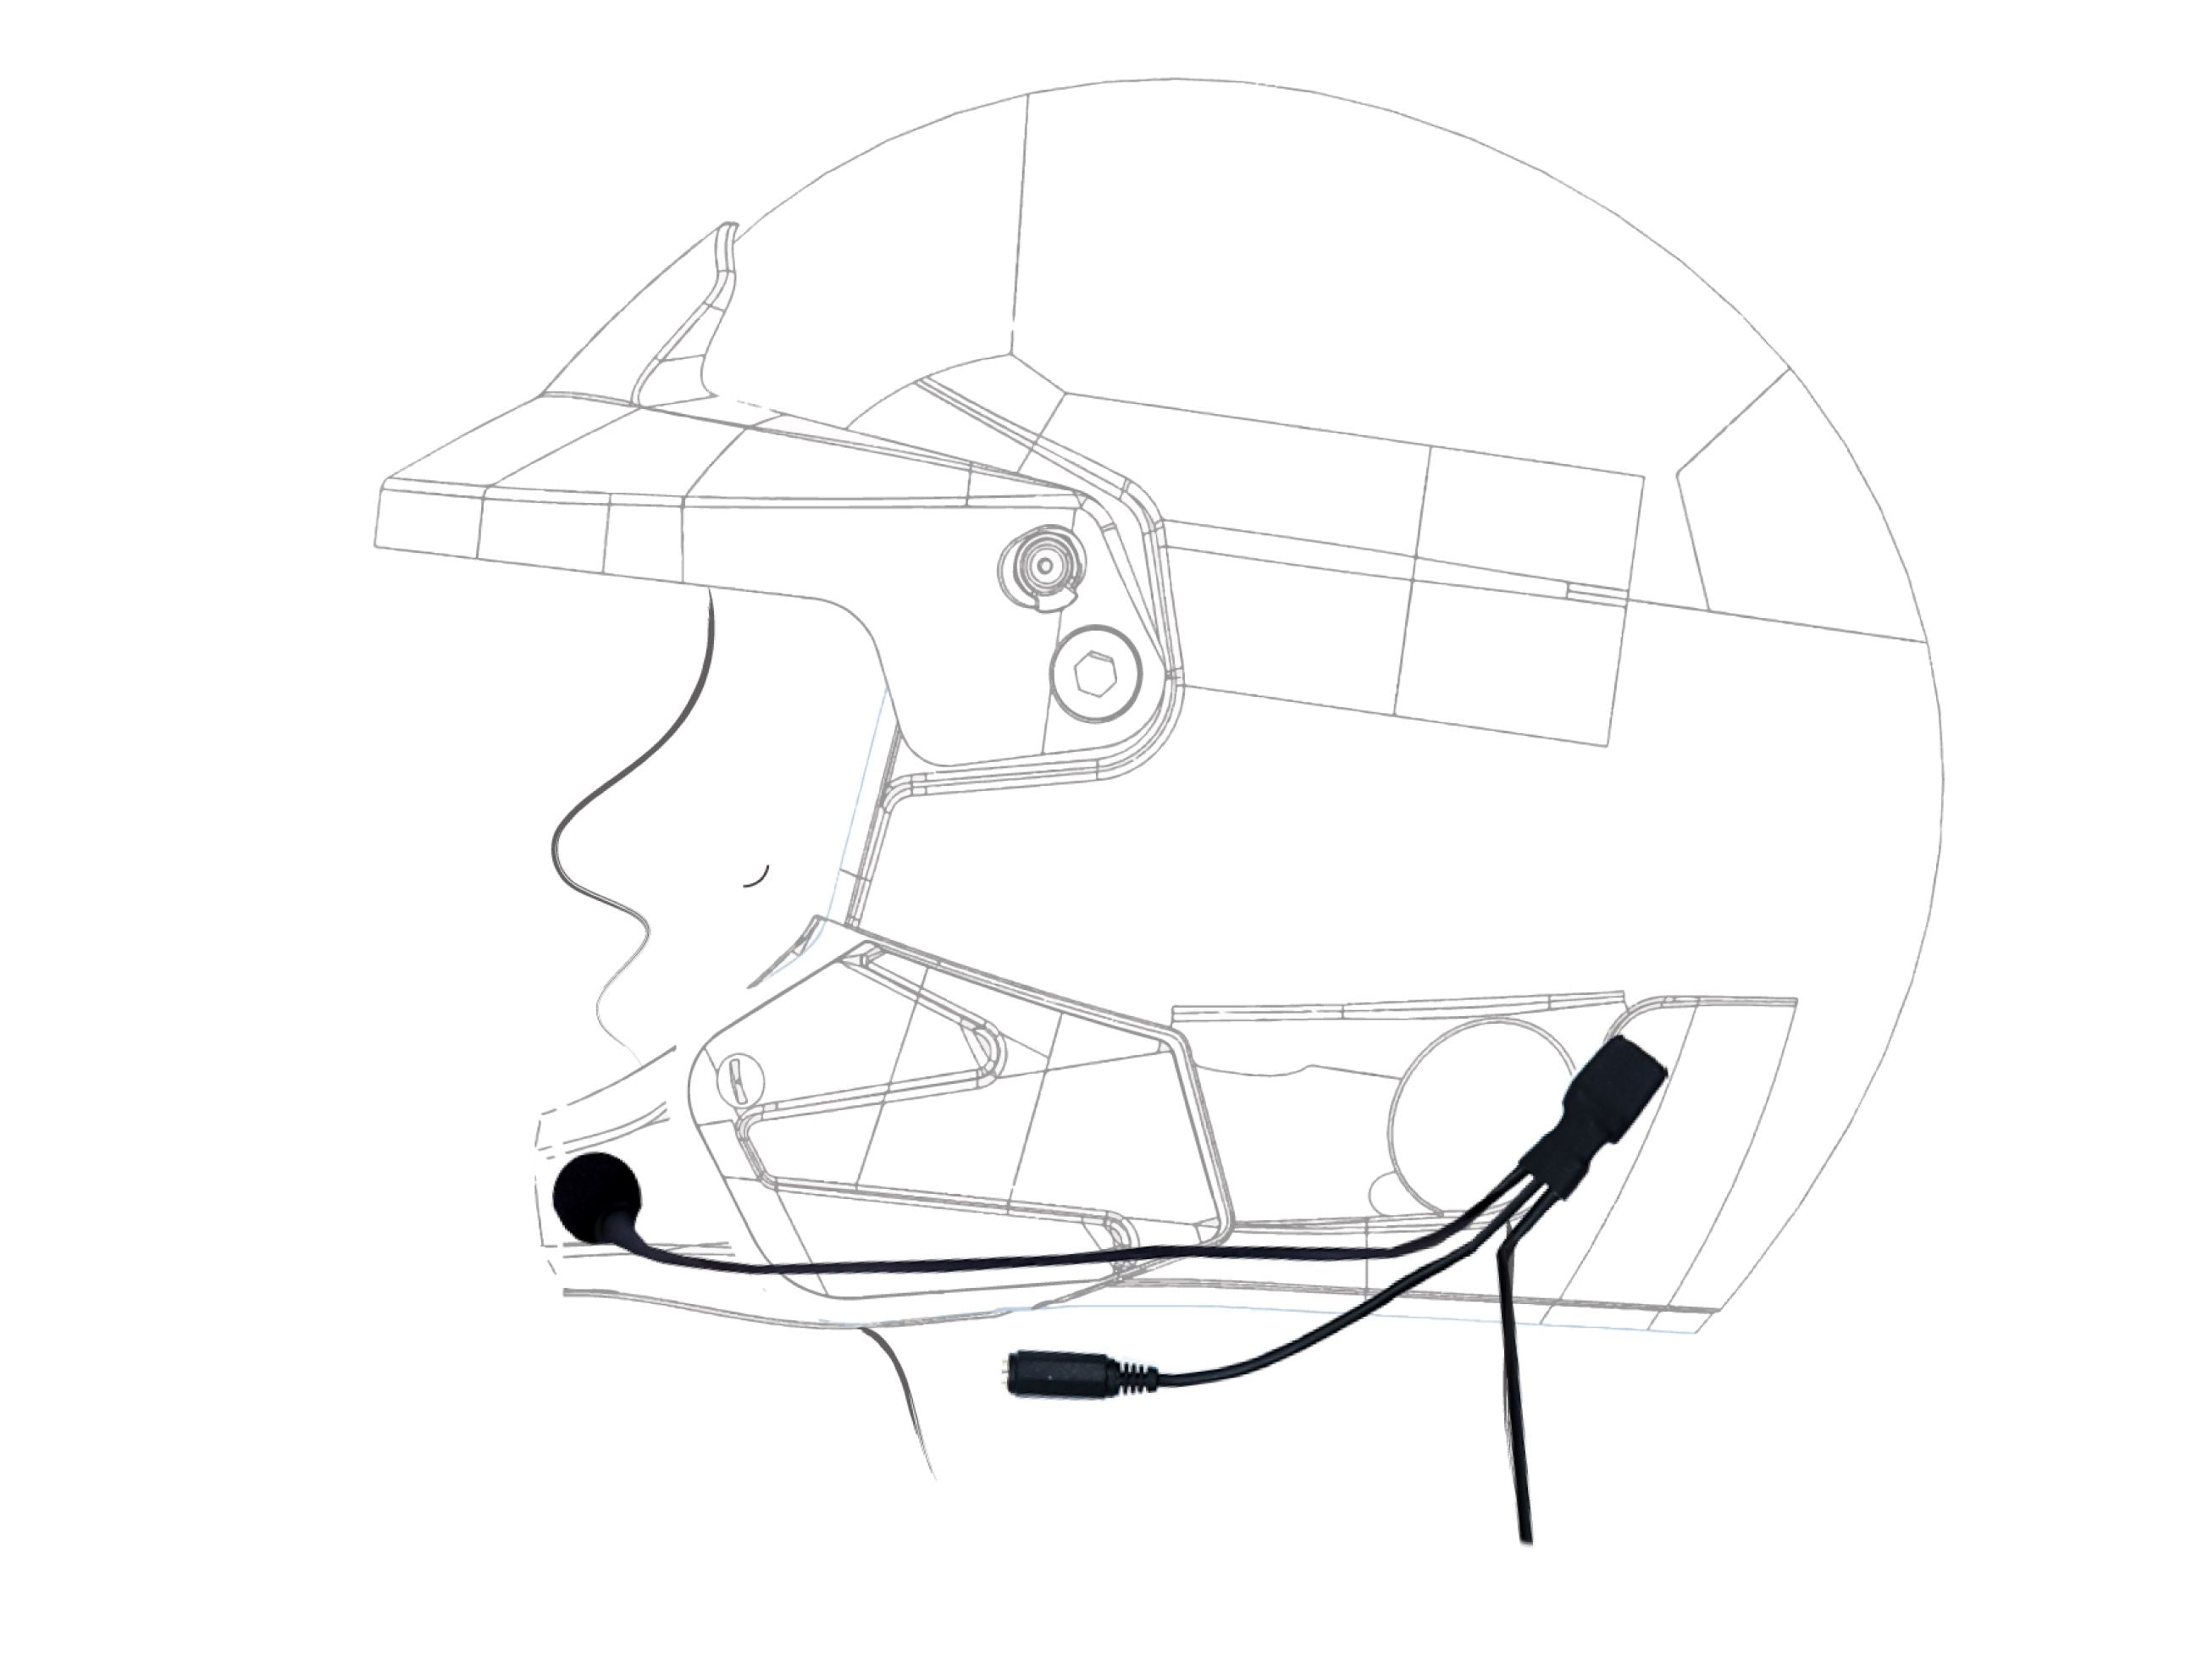 ZERONOISE 6300006 Radio helmet kit for Jet helmet, Male Nexus 4 PIN IMSA, Microphone Flex Boom, with Earcups Photo-0 